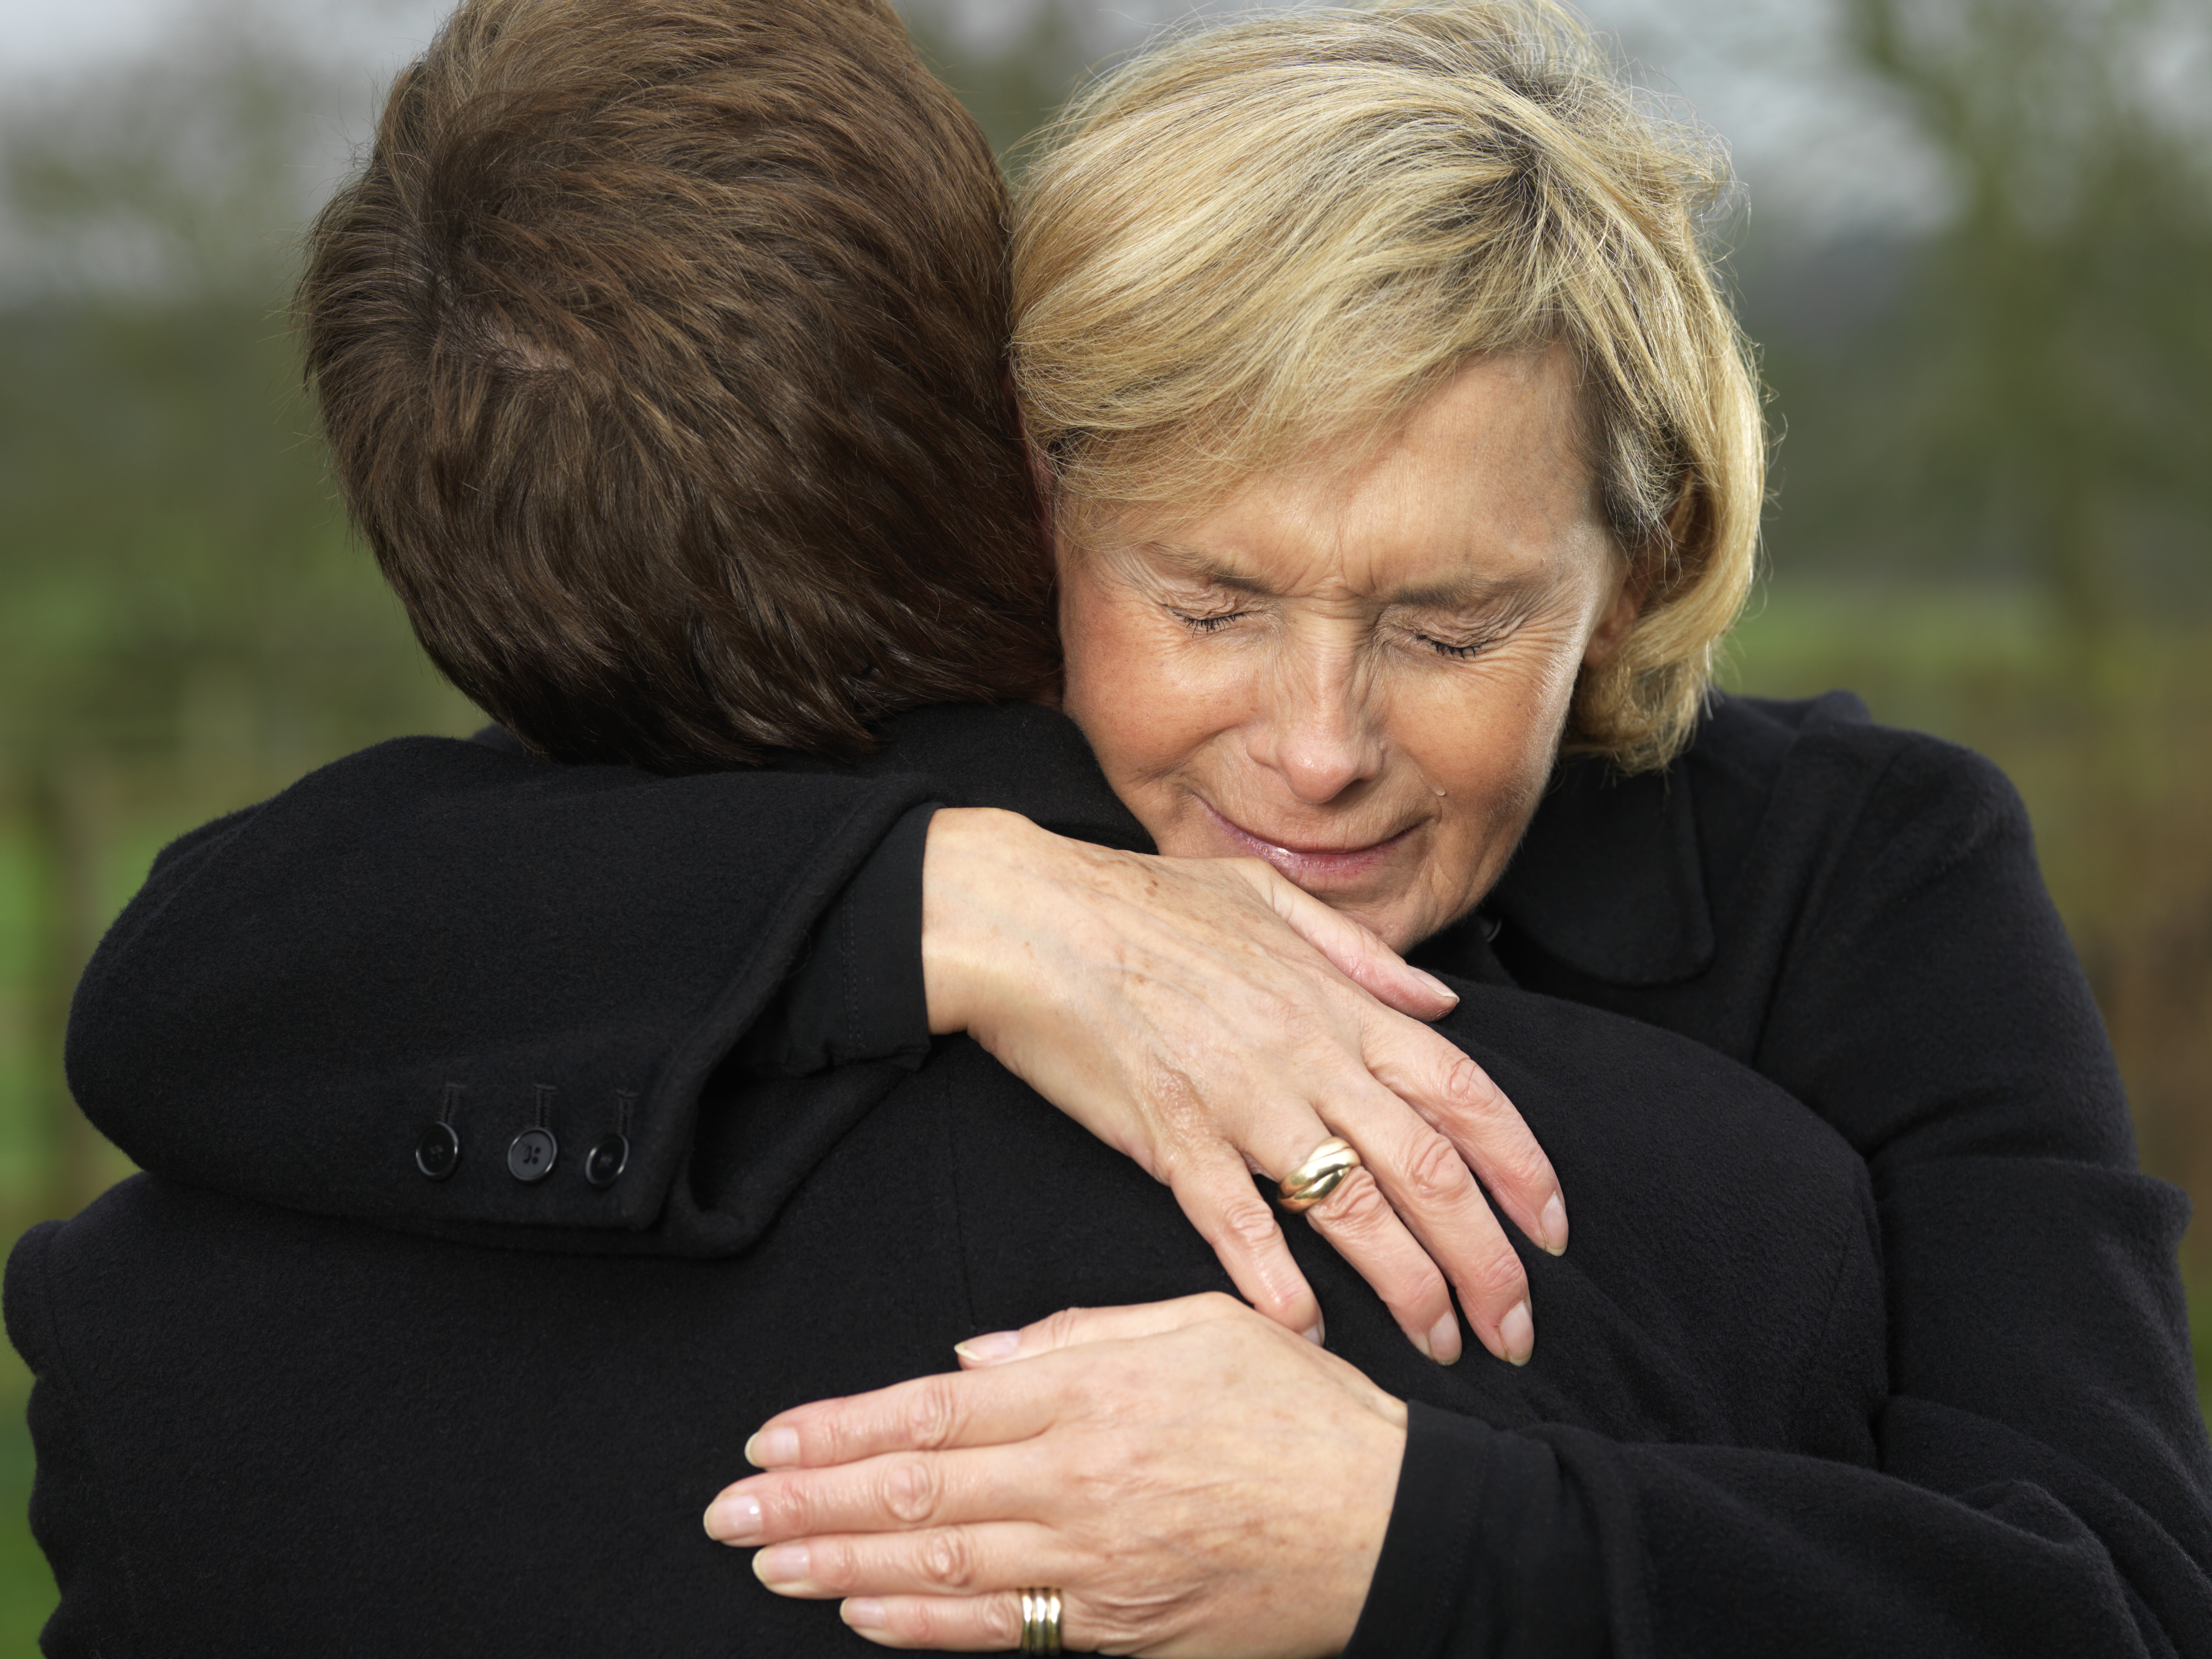 Eine Frau wird weinend fotografiert, während sie einen Mann umarmt | Quelle: Getty Images